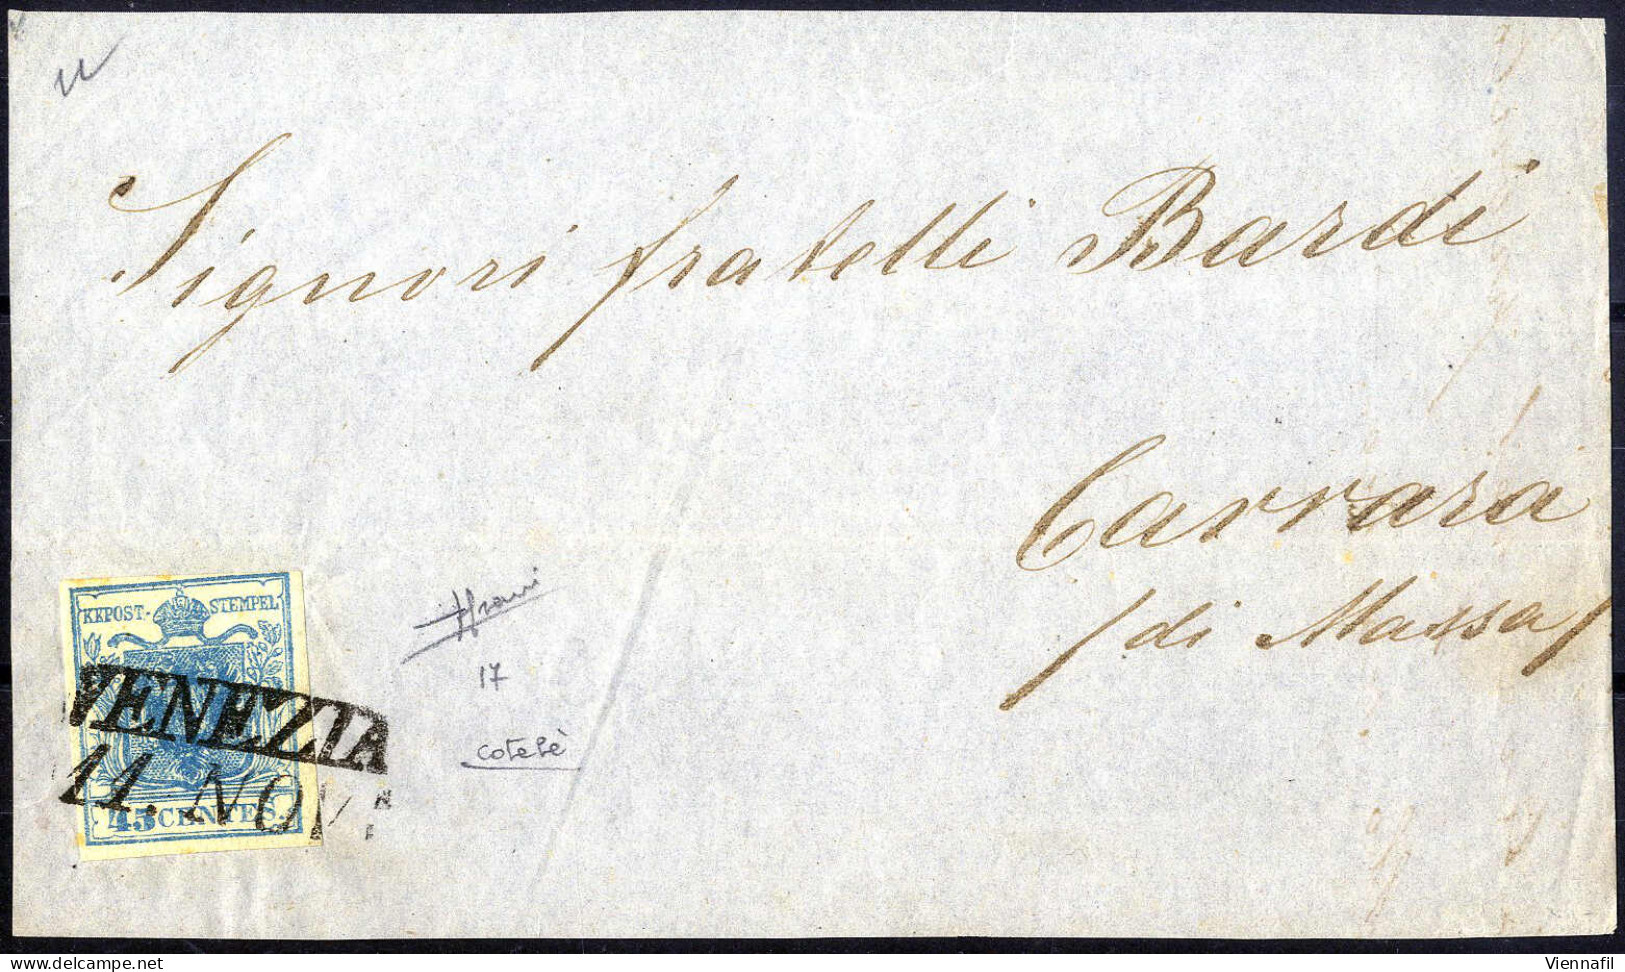 Cover 1851, Frontespizio Di Lettera Da Venezia Il 11.11 Per Carrara Affrancata Con 45 C. Azzurro I Tipo Carta Costolata, - Lombardo-Vénétie